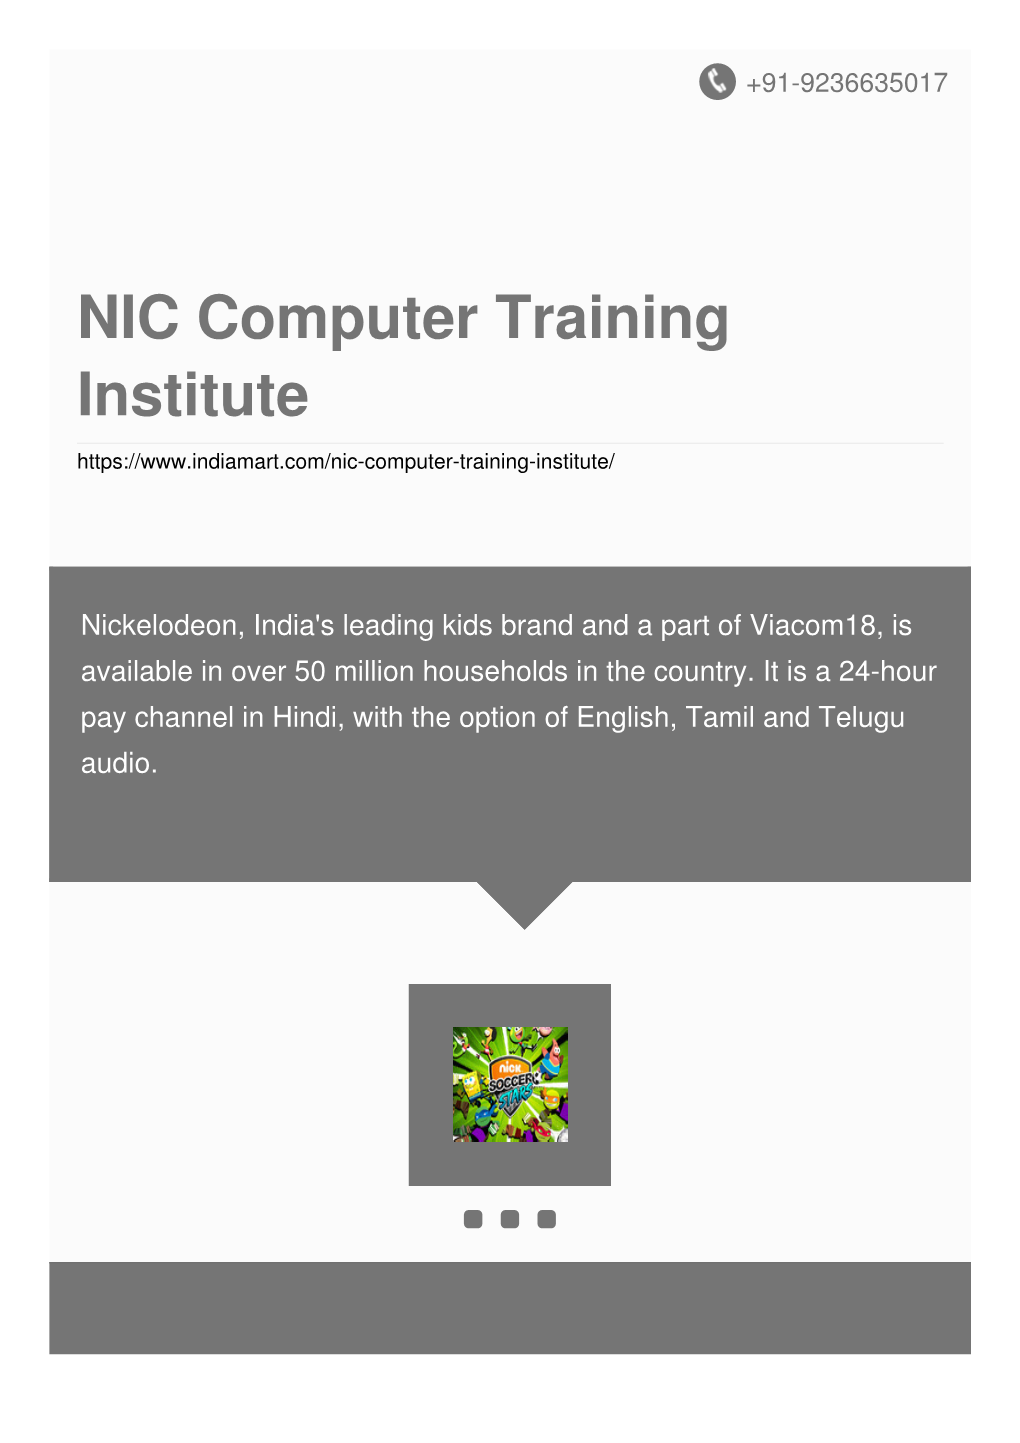 NIC Computer Training Institute